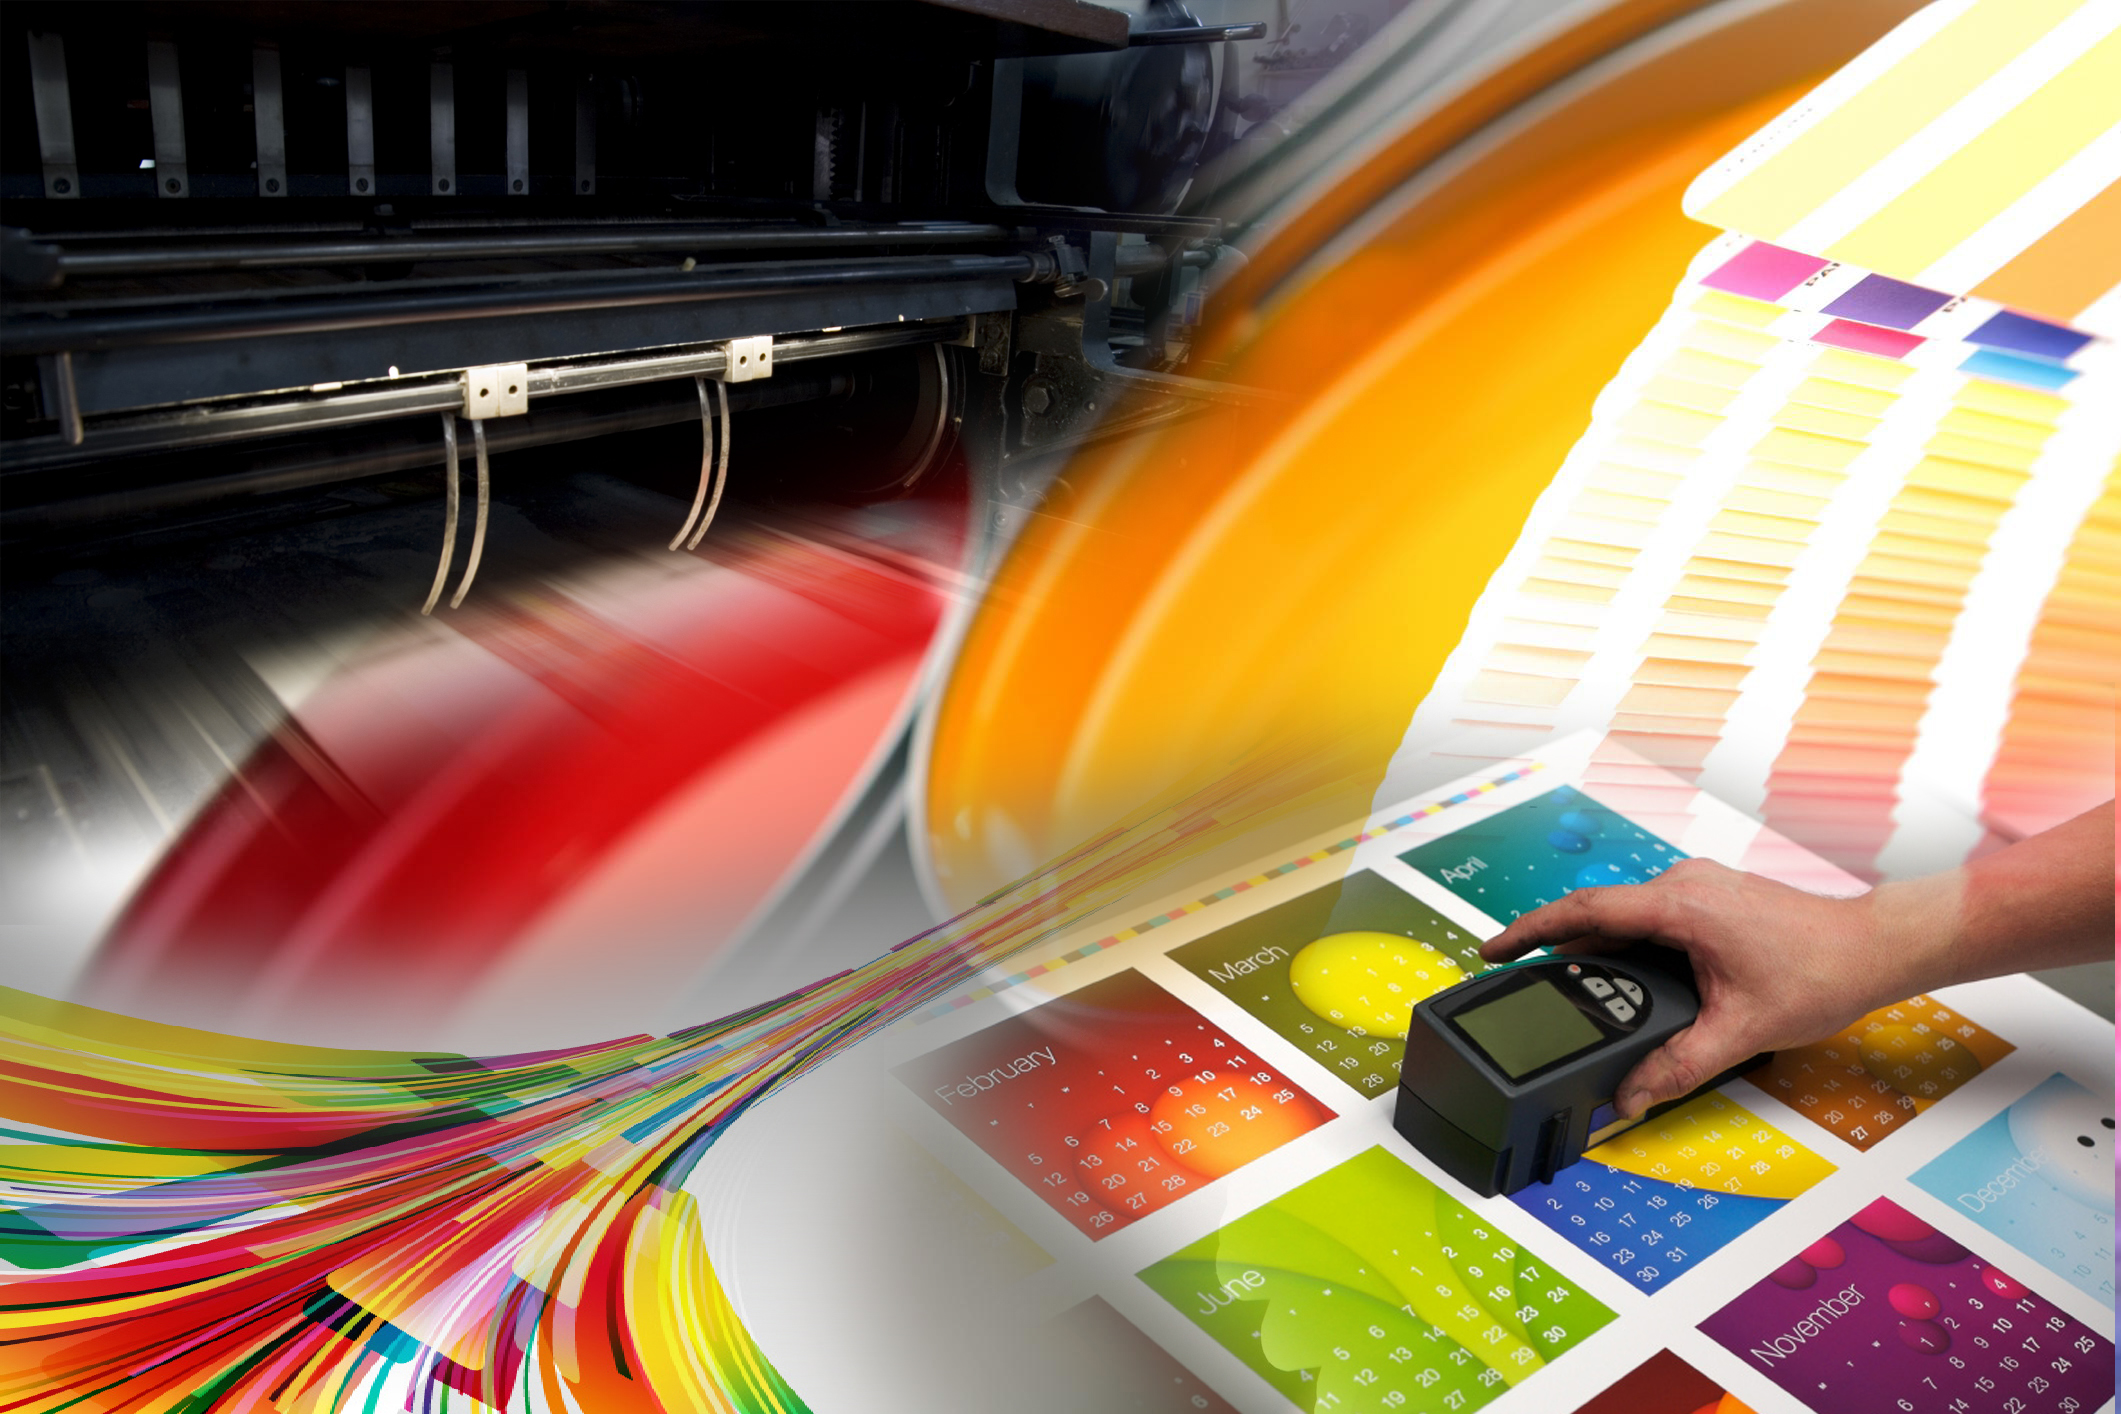 Производства рекламного продукта. Цифровая печать. Типография. Цветная печать. Широкоформатная печать.